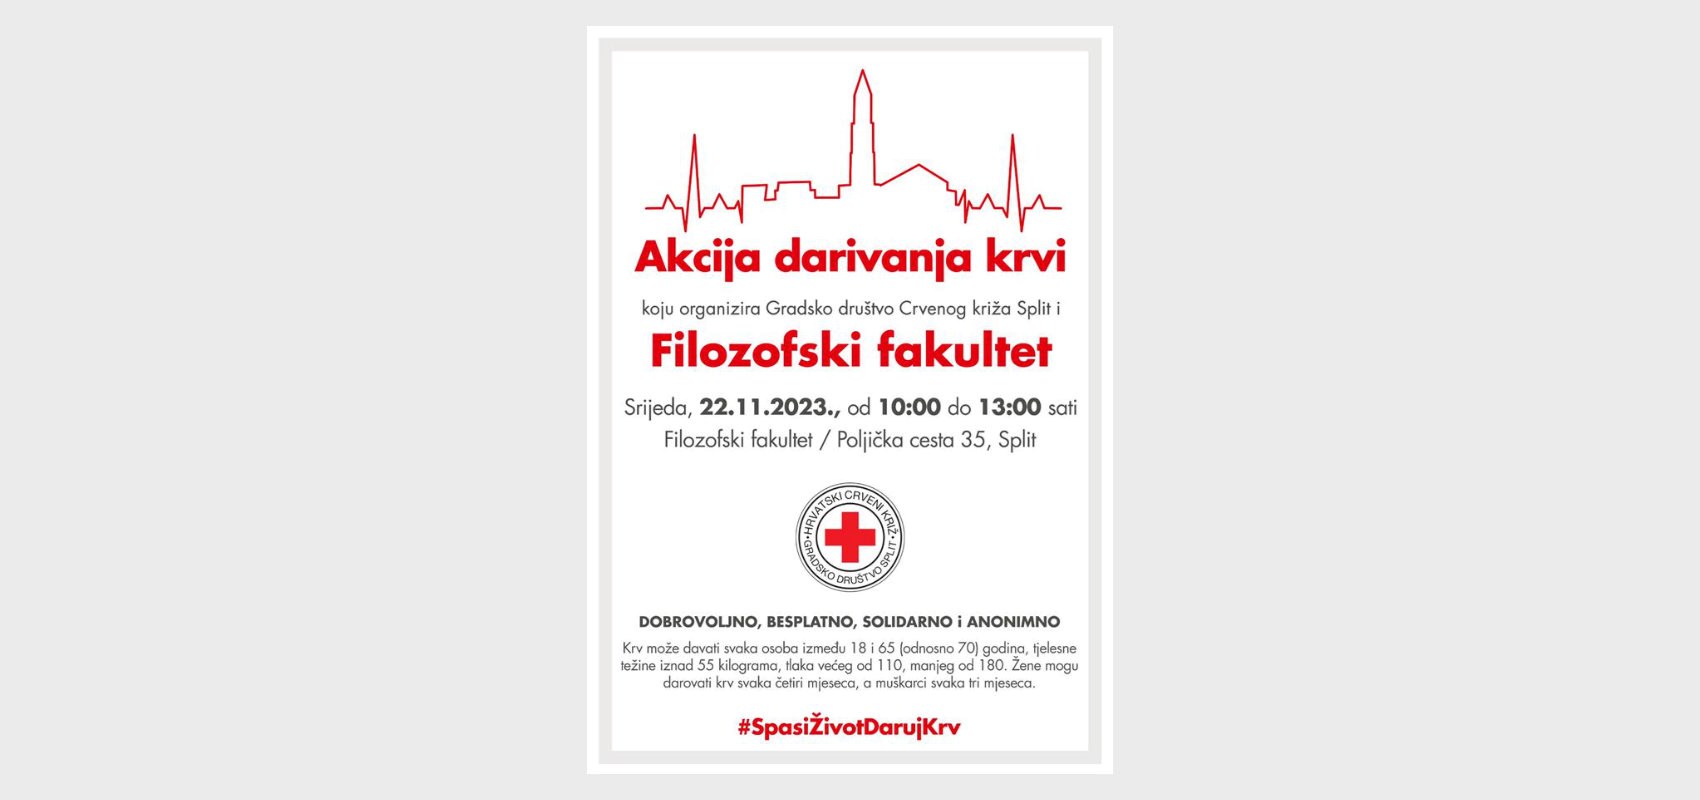 Akcija darivanja krvi na Filozofskom fakultetu Sveučilišta u Splitu